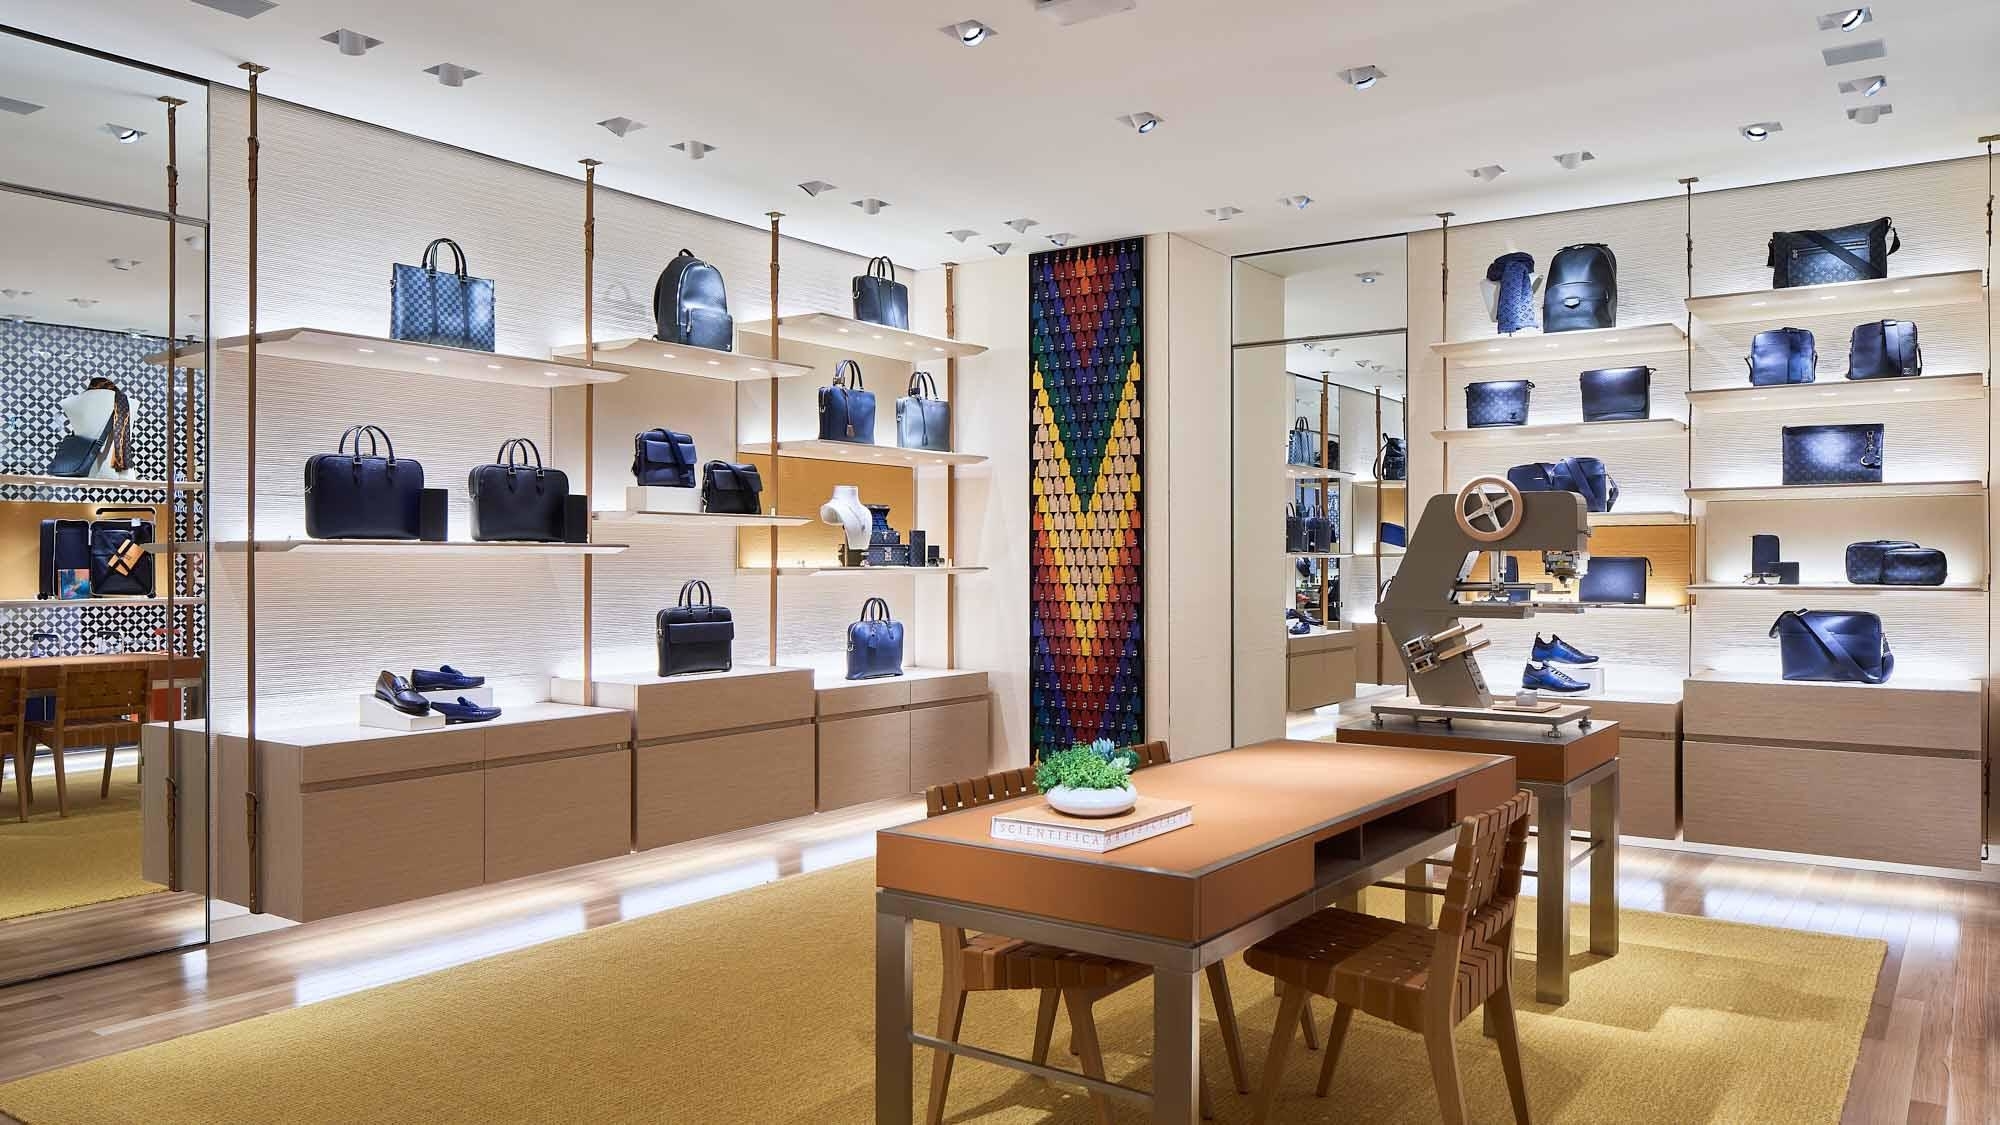 Louis Vuitton Holt Renfrew Vancouver - Leather Goods Retailers